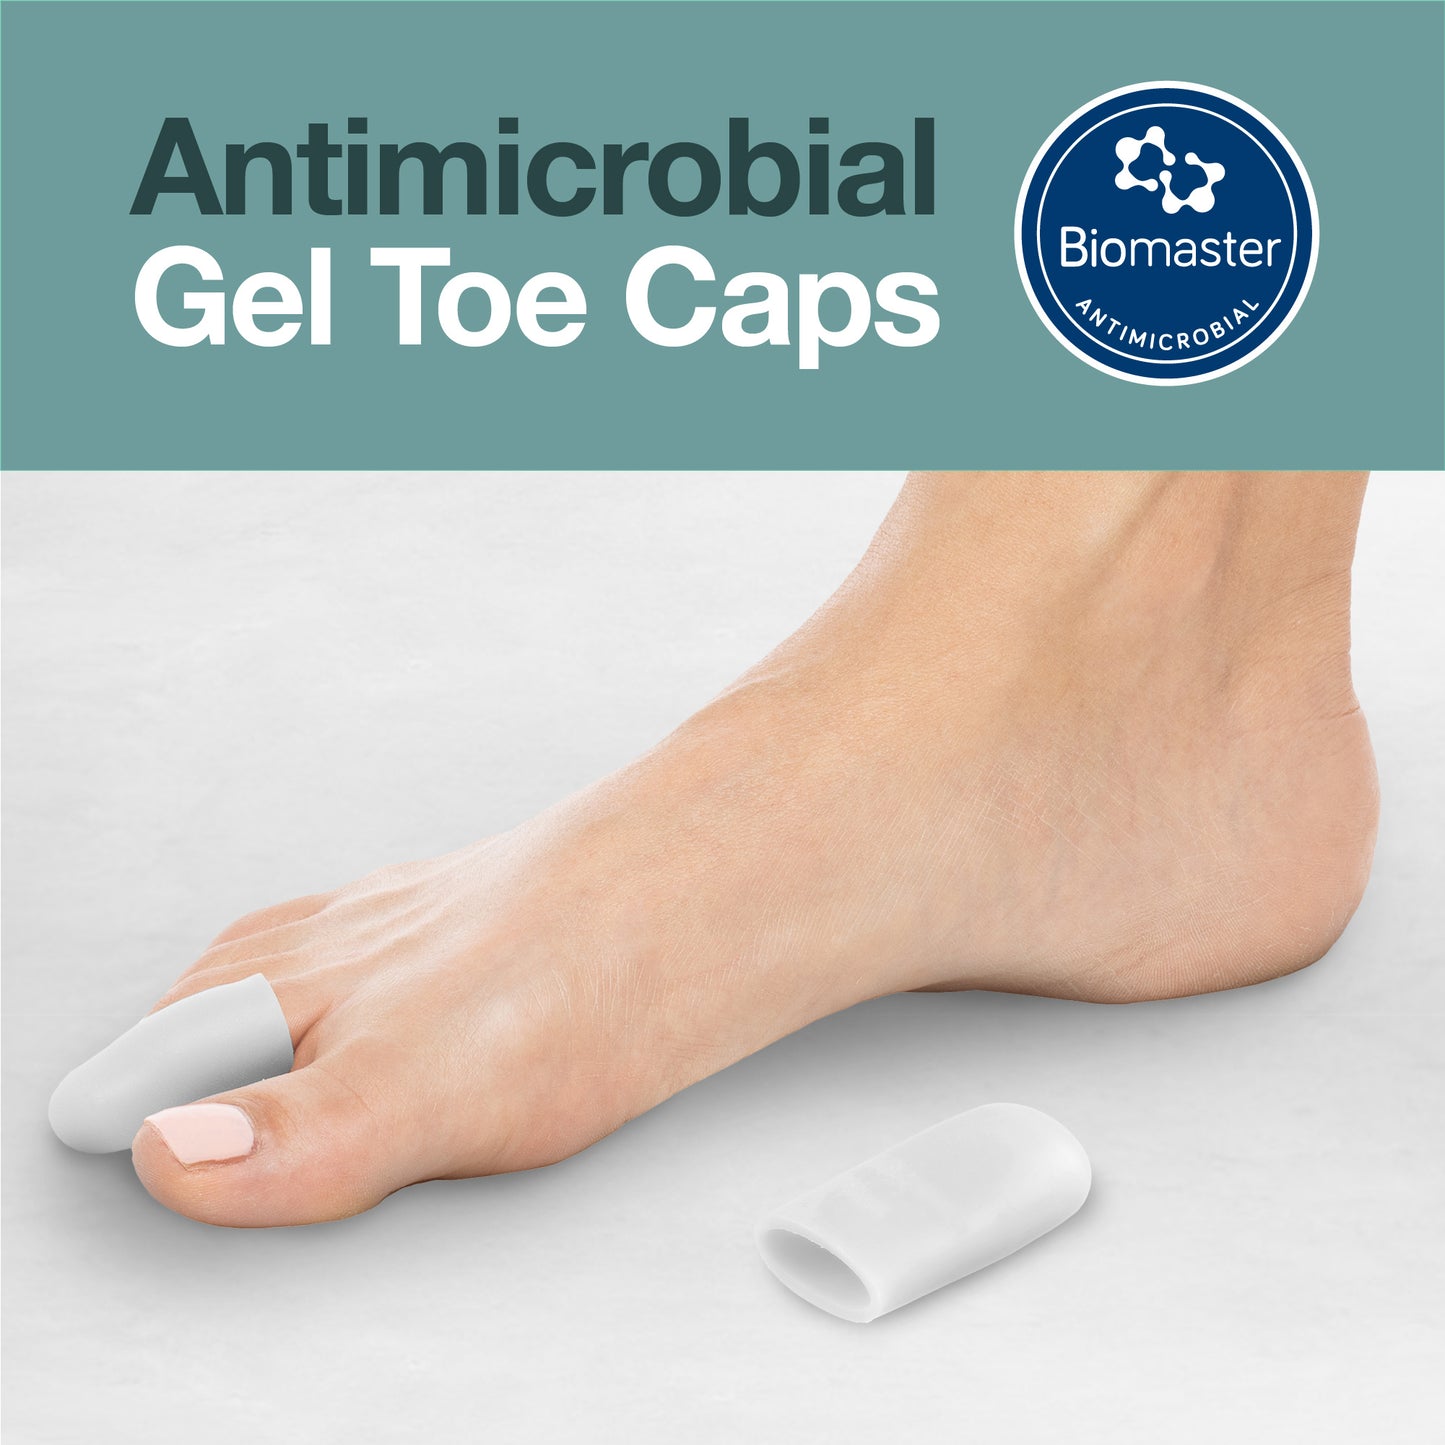 Antimicrobial Gel Toe Caps